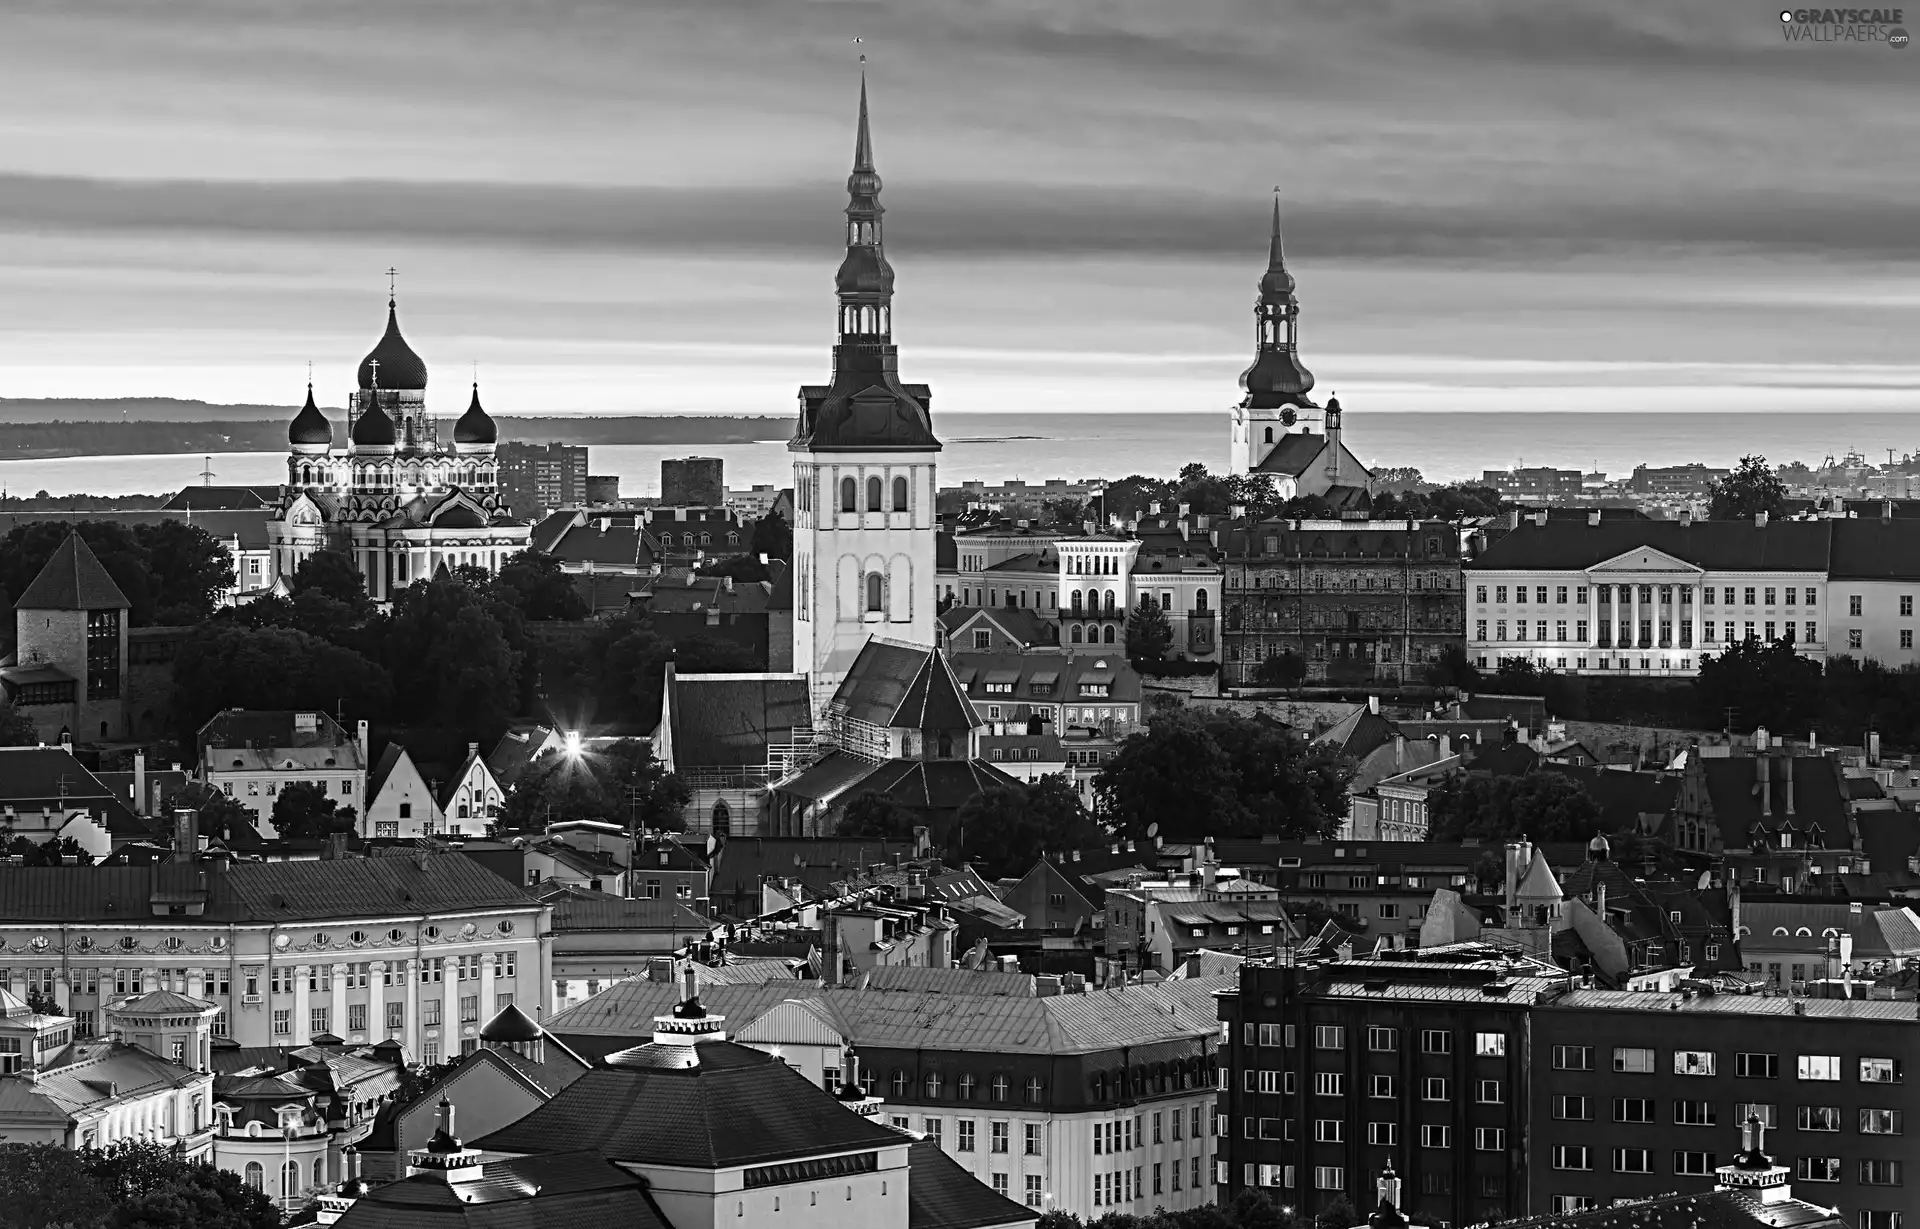 Town, Tallinn, Estonia